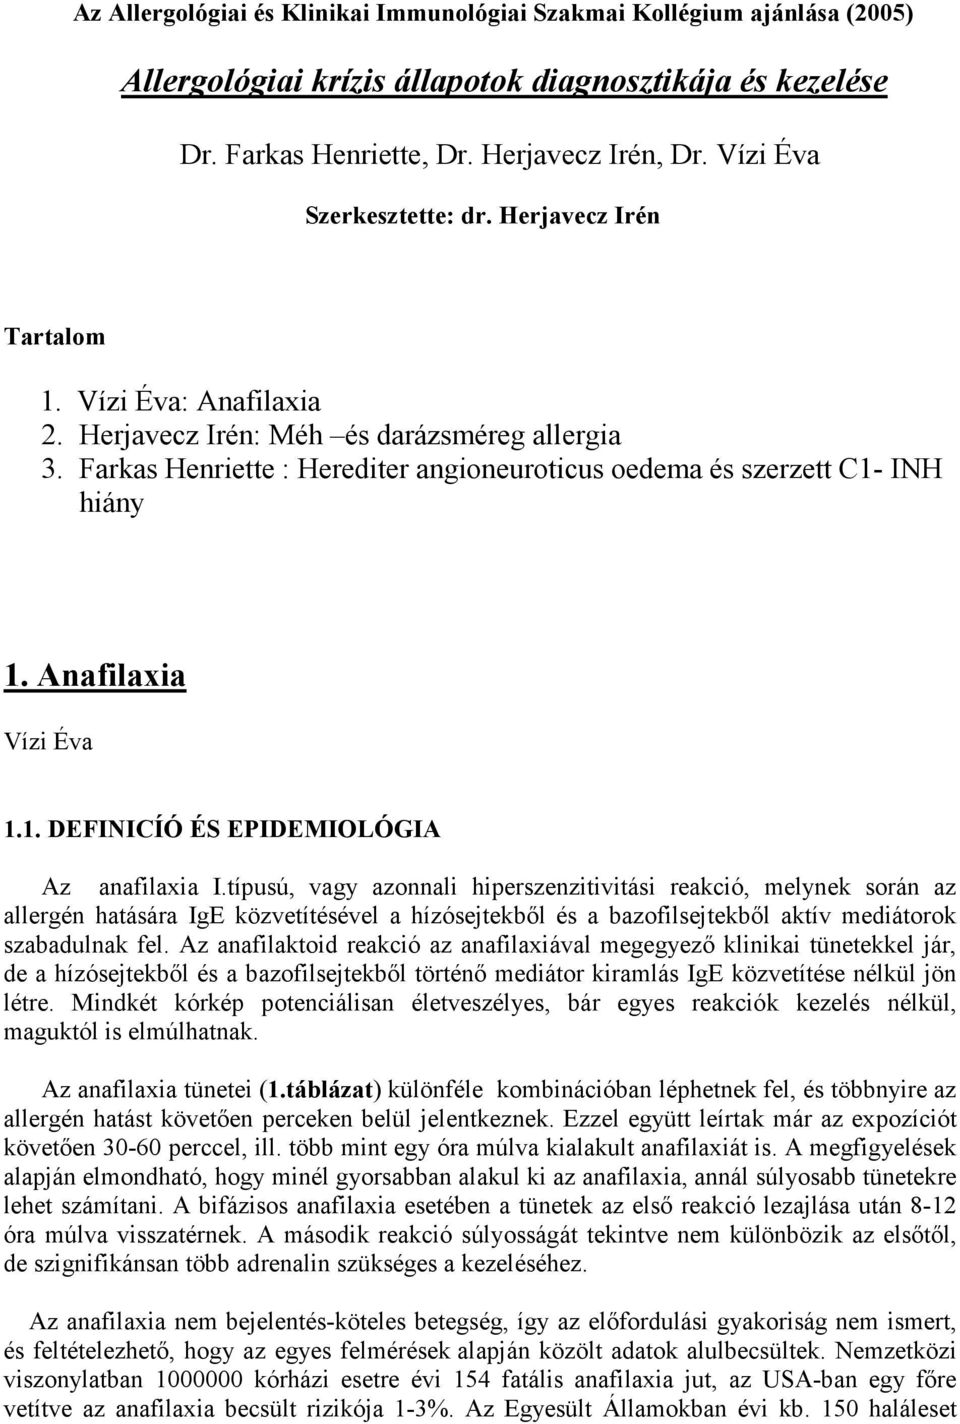 Allergológiai krízis állapotok diagnosztikája és kezelése - PDF Ingyenes  letöltés